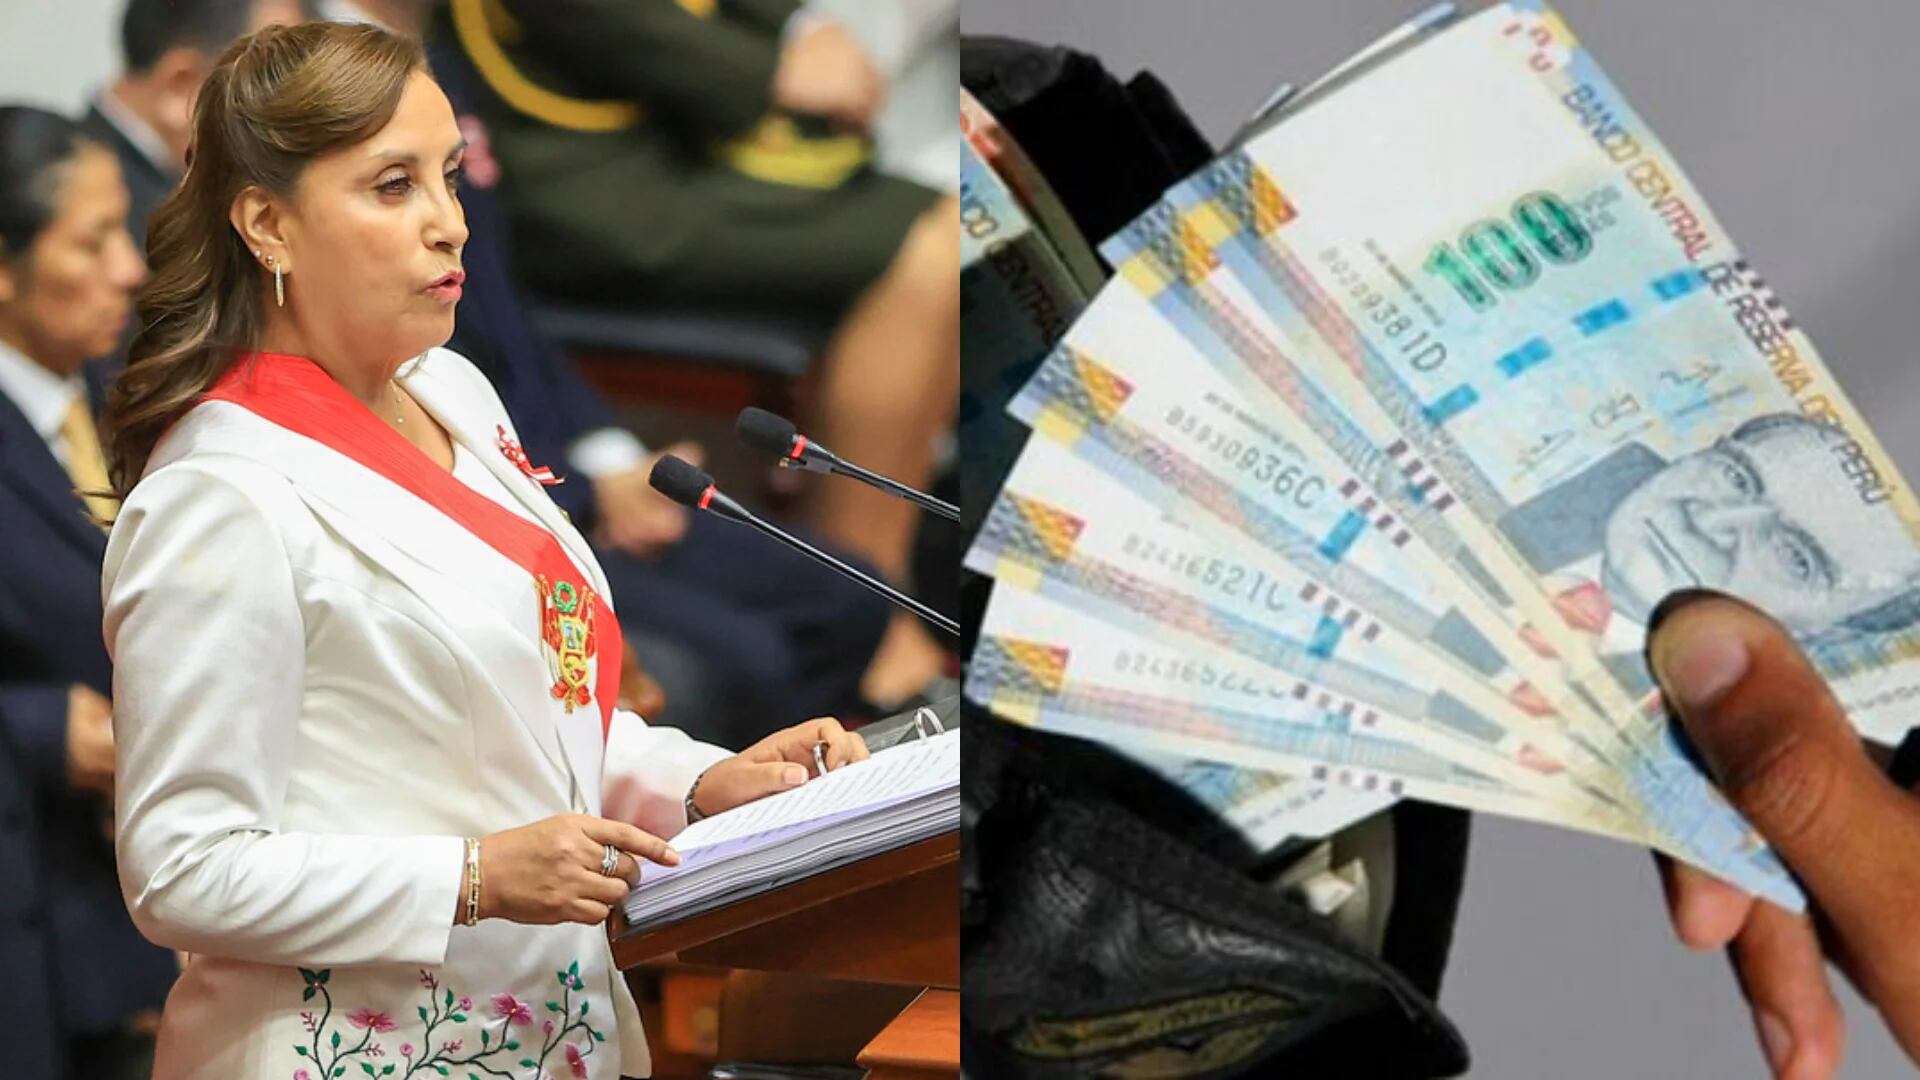 Incremento de salario mínimo: Dina Boluarte en su mensaje a la Nación prevé que “pronto” se anunciará aumento